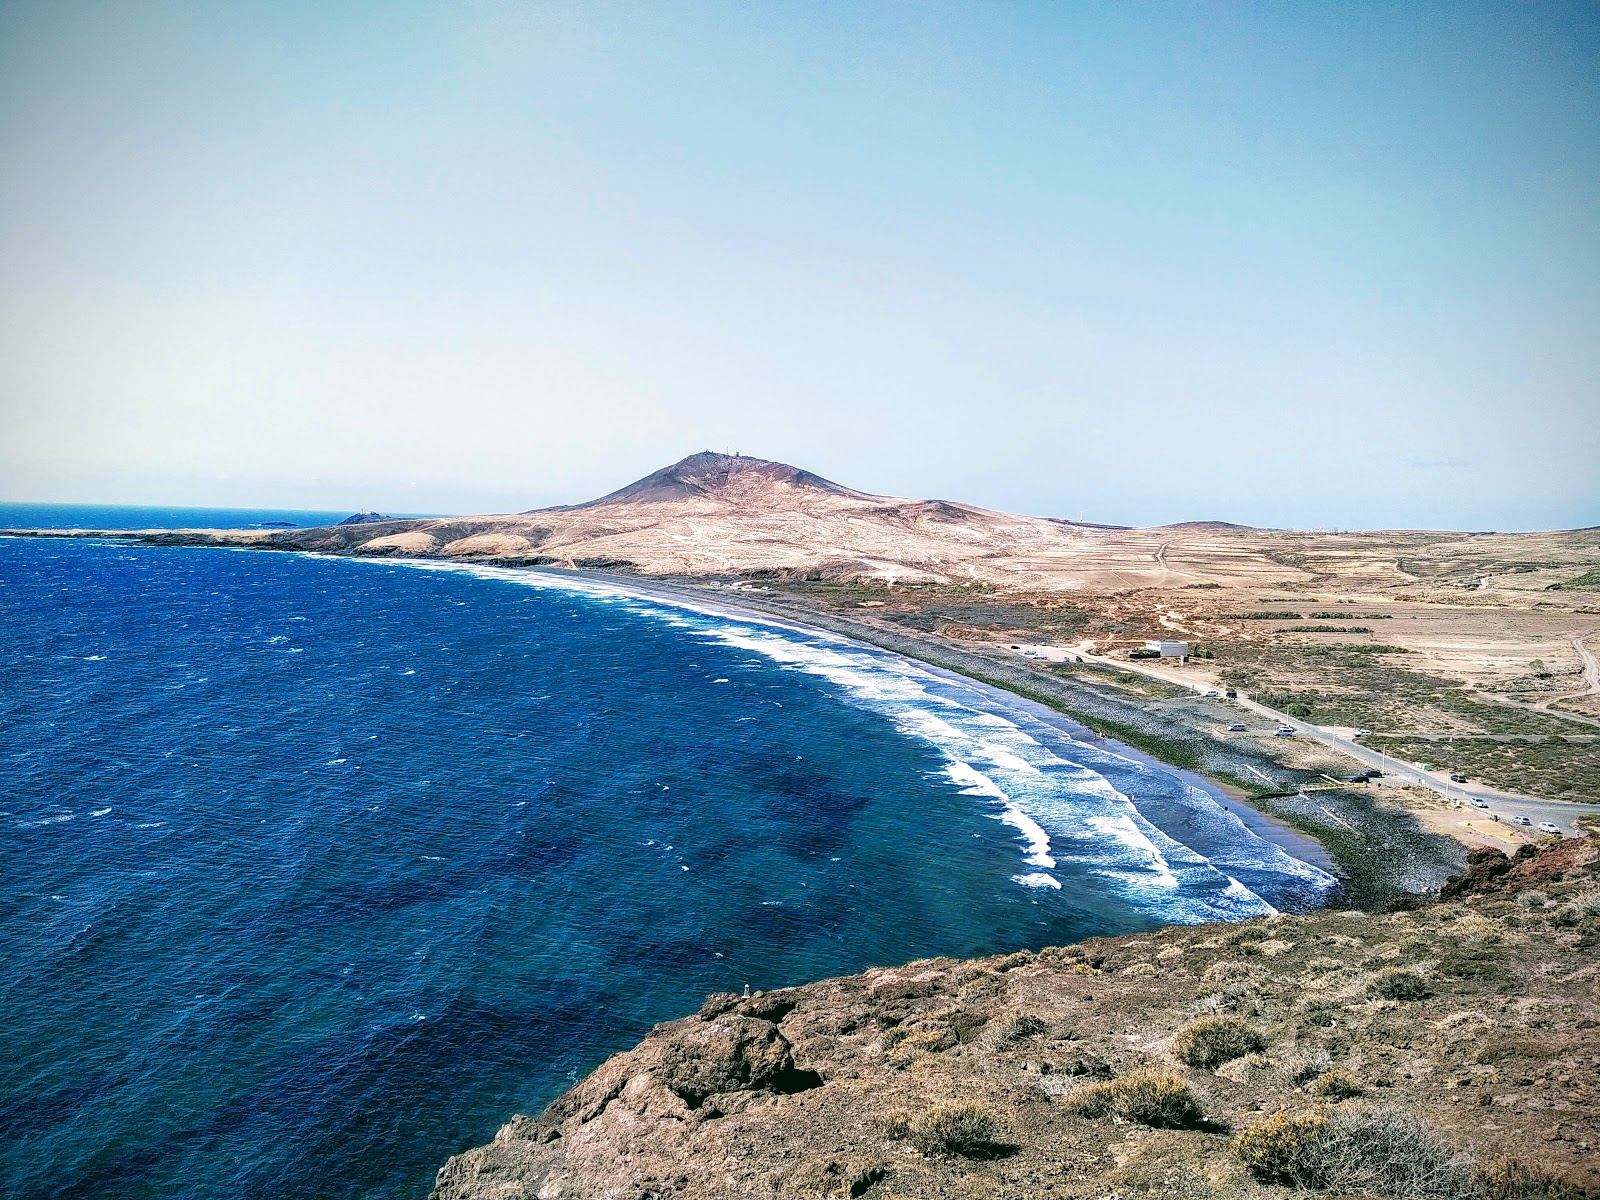 Zdjęcie Playa de Vargas z powierzchnią niebieska woda